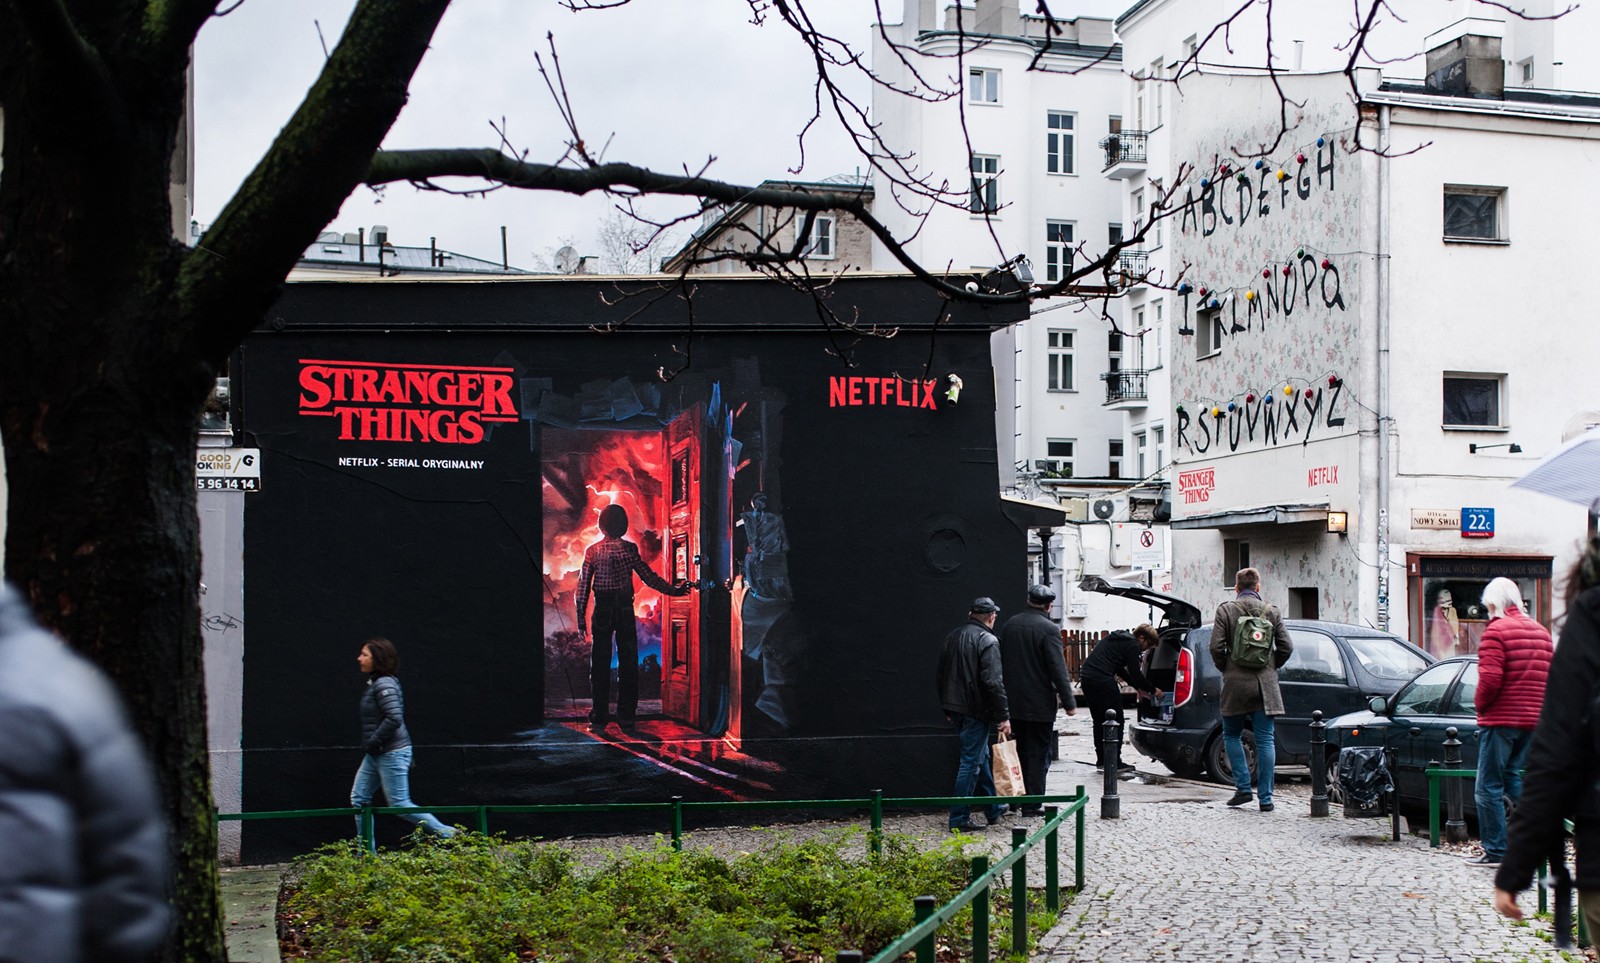 Mural Stranger Things na pawilonach w Warszawie na zlecenie Netflixa | Stranger Things | Portfolio